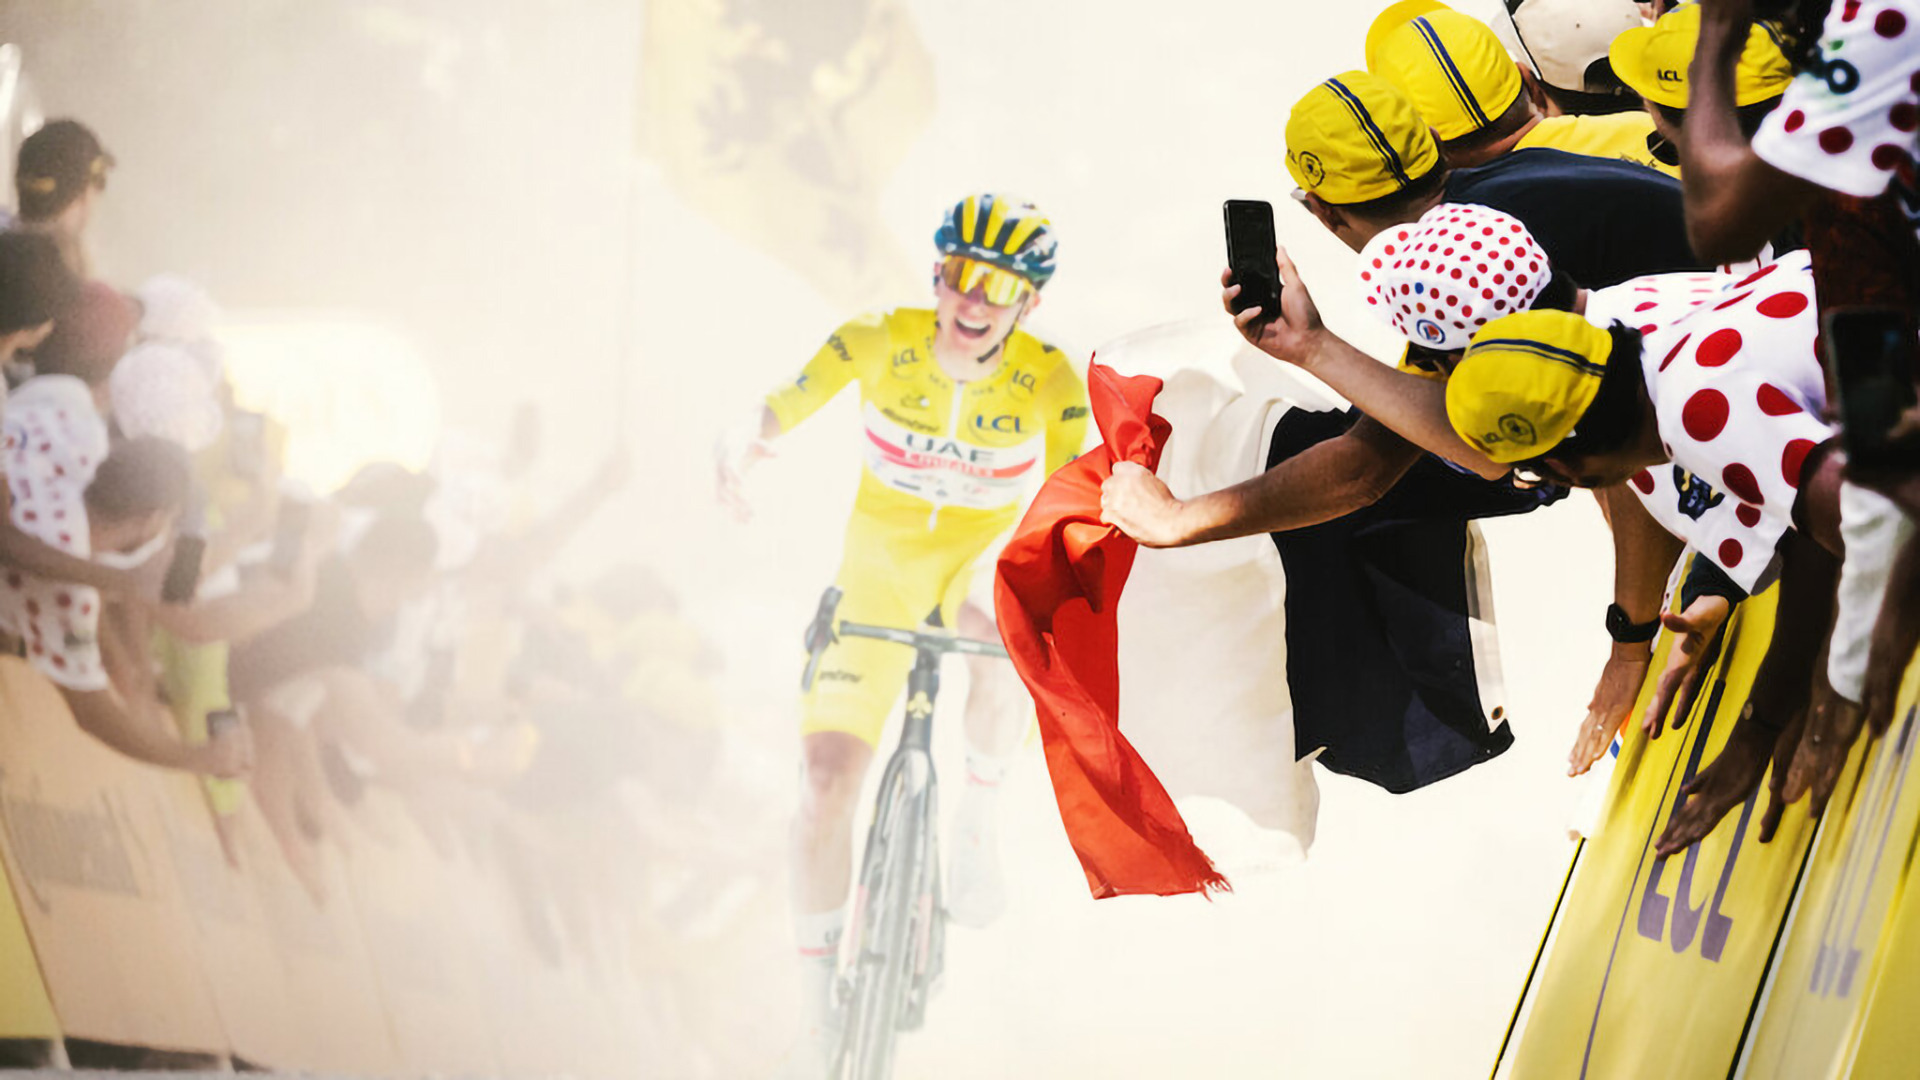 Сериал Тур де Франс: в сердце пелотона